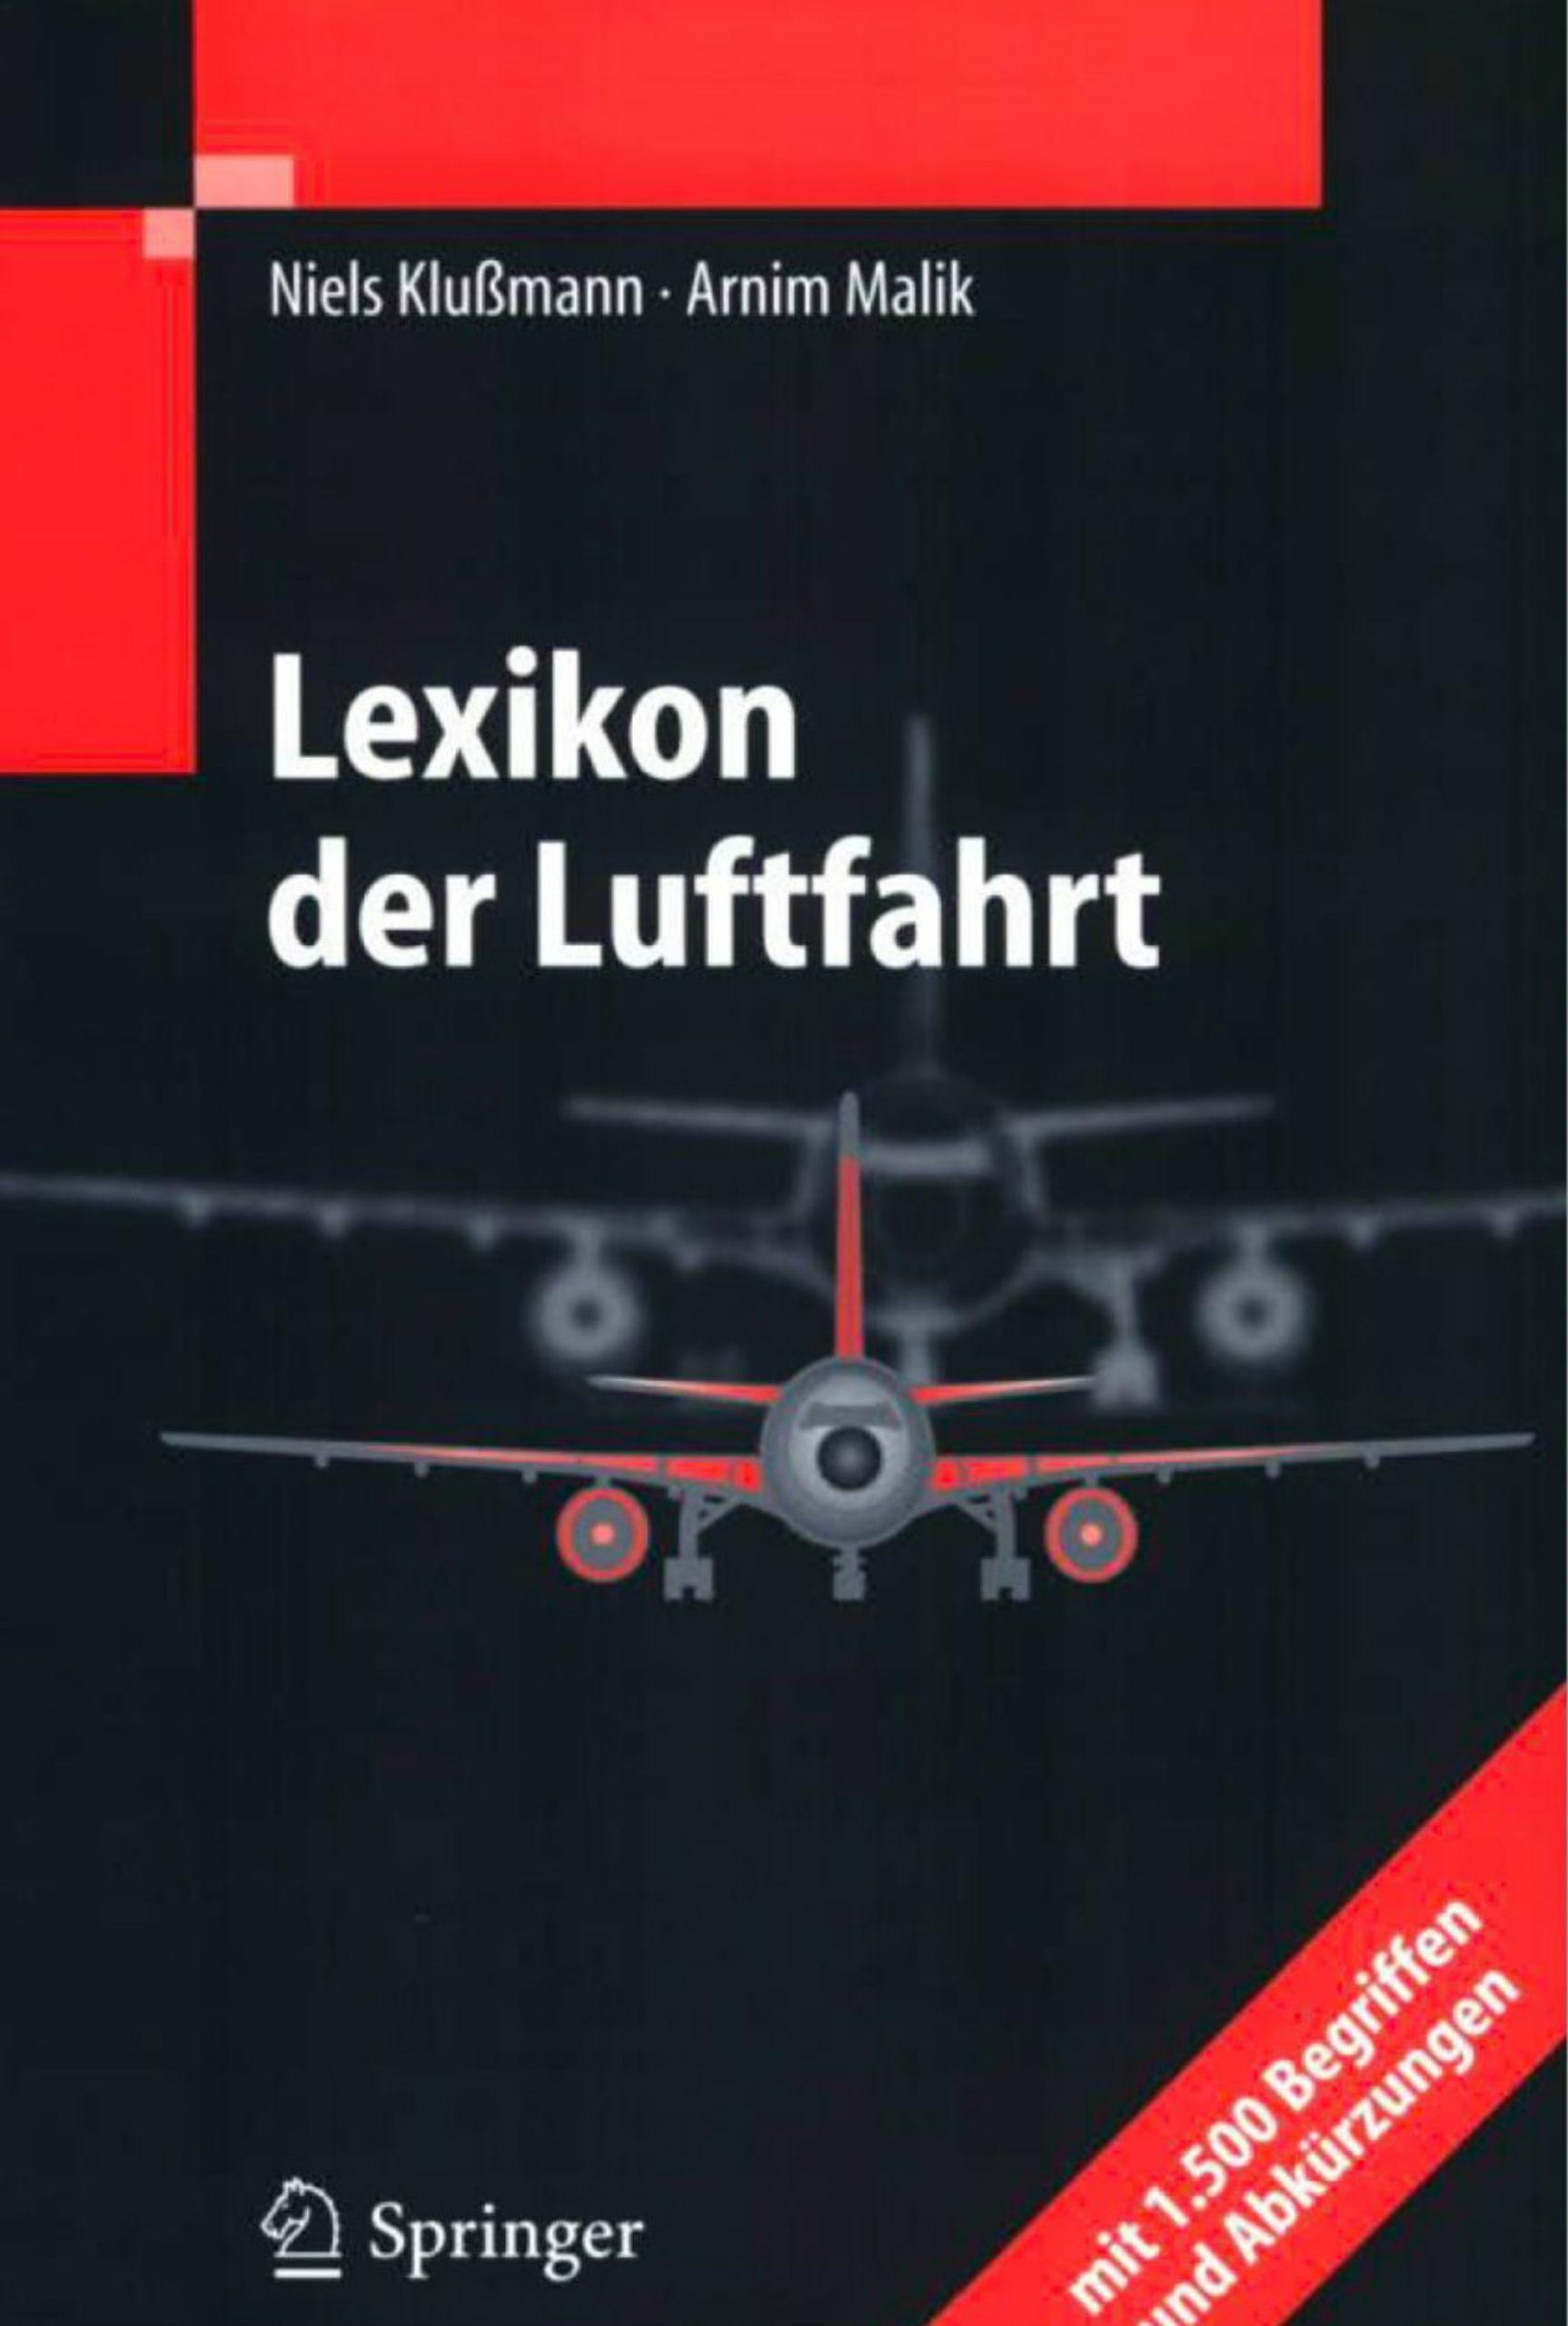 دانلود کتاب آلمانیlexikon der luftfahrt